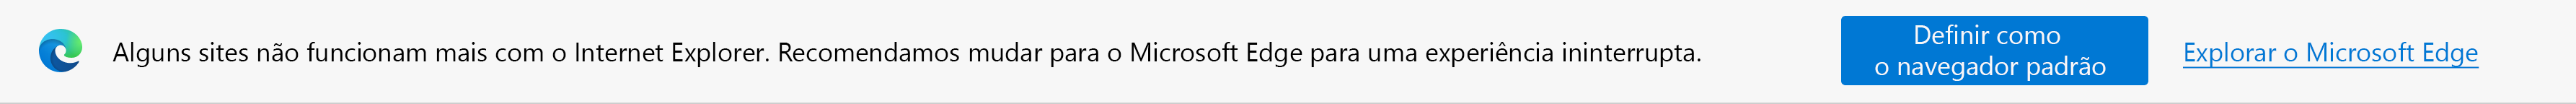 Notificações sobre sites modernos e solicitações para definir o Microsoft Edge como navegador padrão ou para explorar o Microsoft Edge.